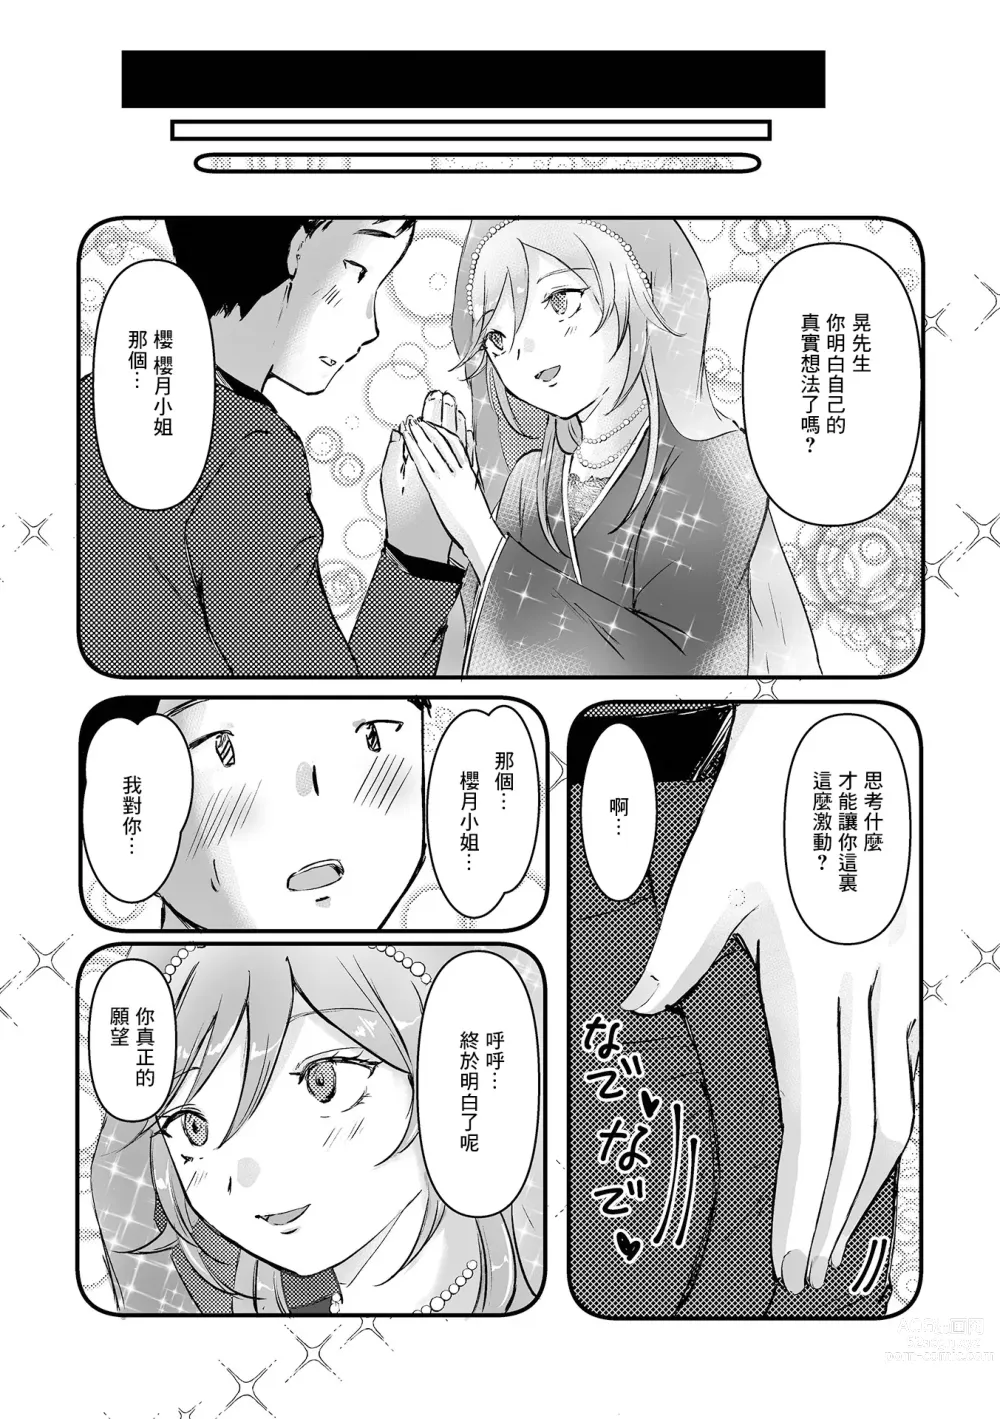 Page 3 of manga Uranaikan Anata no Yume o Kanaemasu